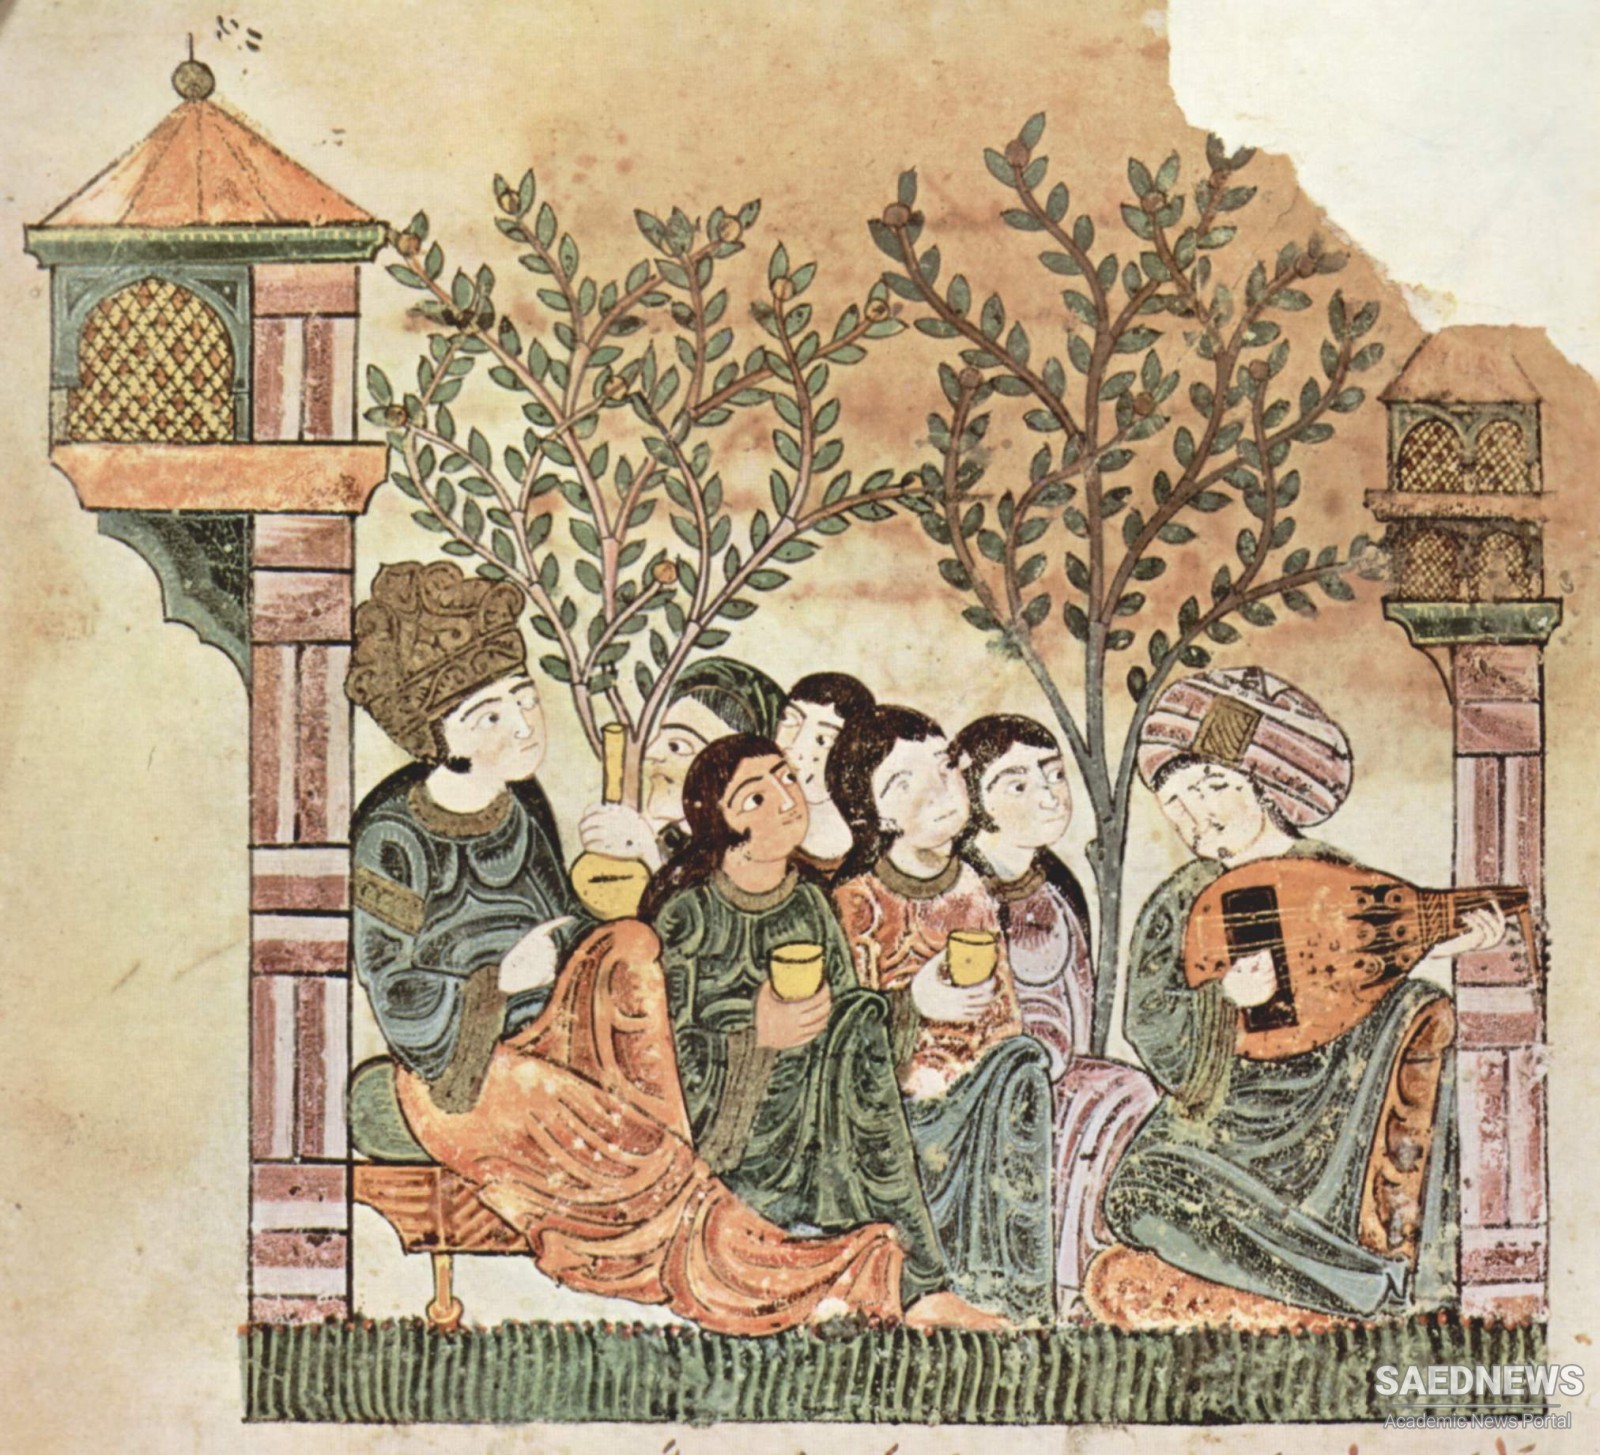 प्रारंभिक इस्लामी फारस में संगीत के लिए वैज्ञानिक दृष्टिकोण का गठन